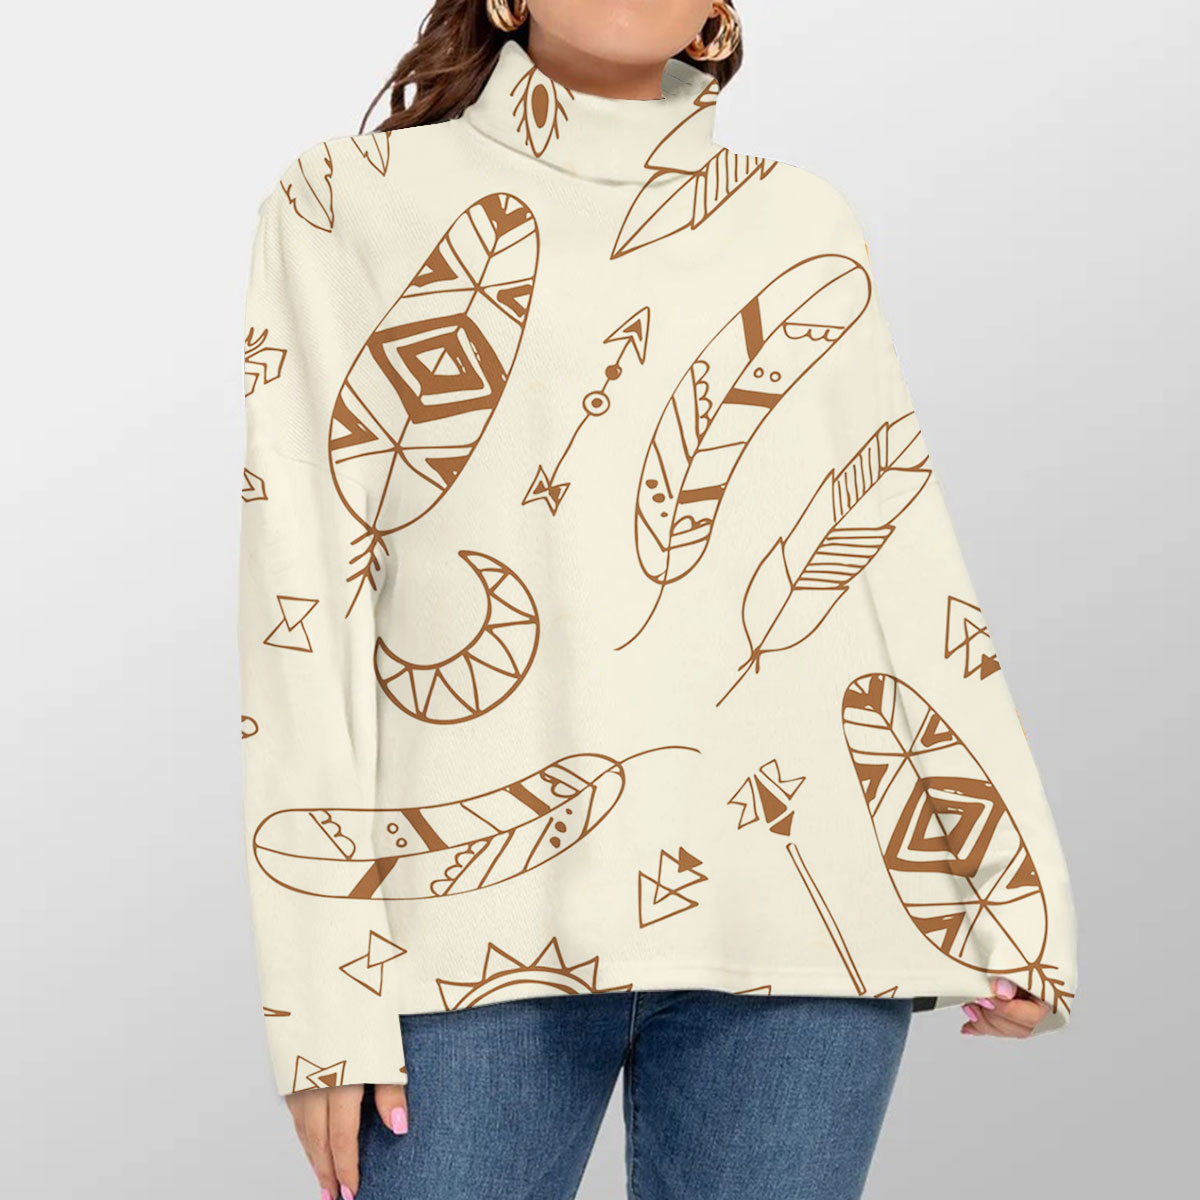 Boho Chic Style Turtleneck Sweater